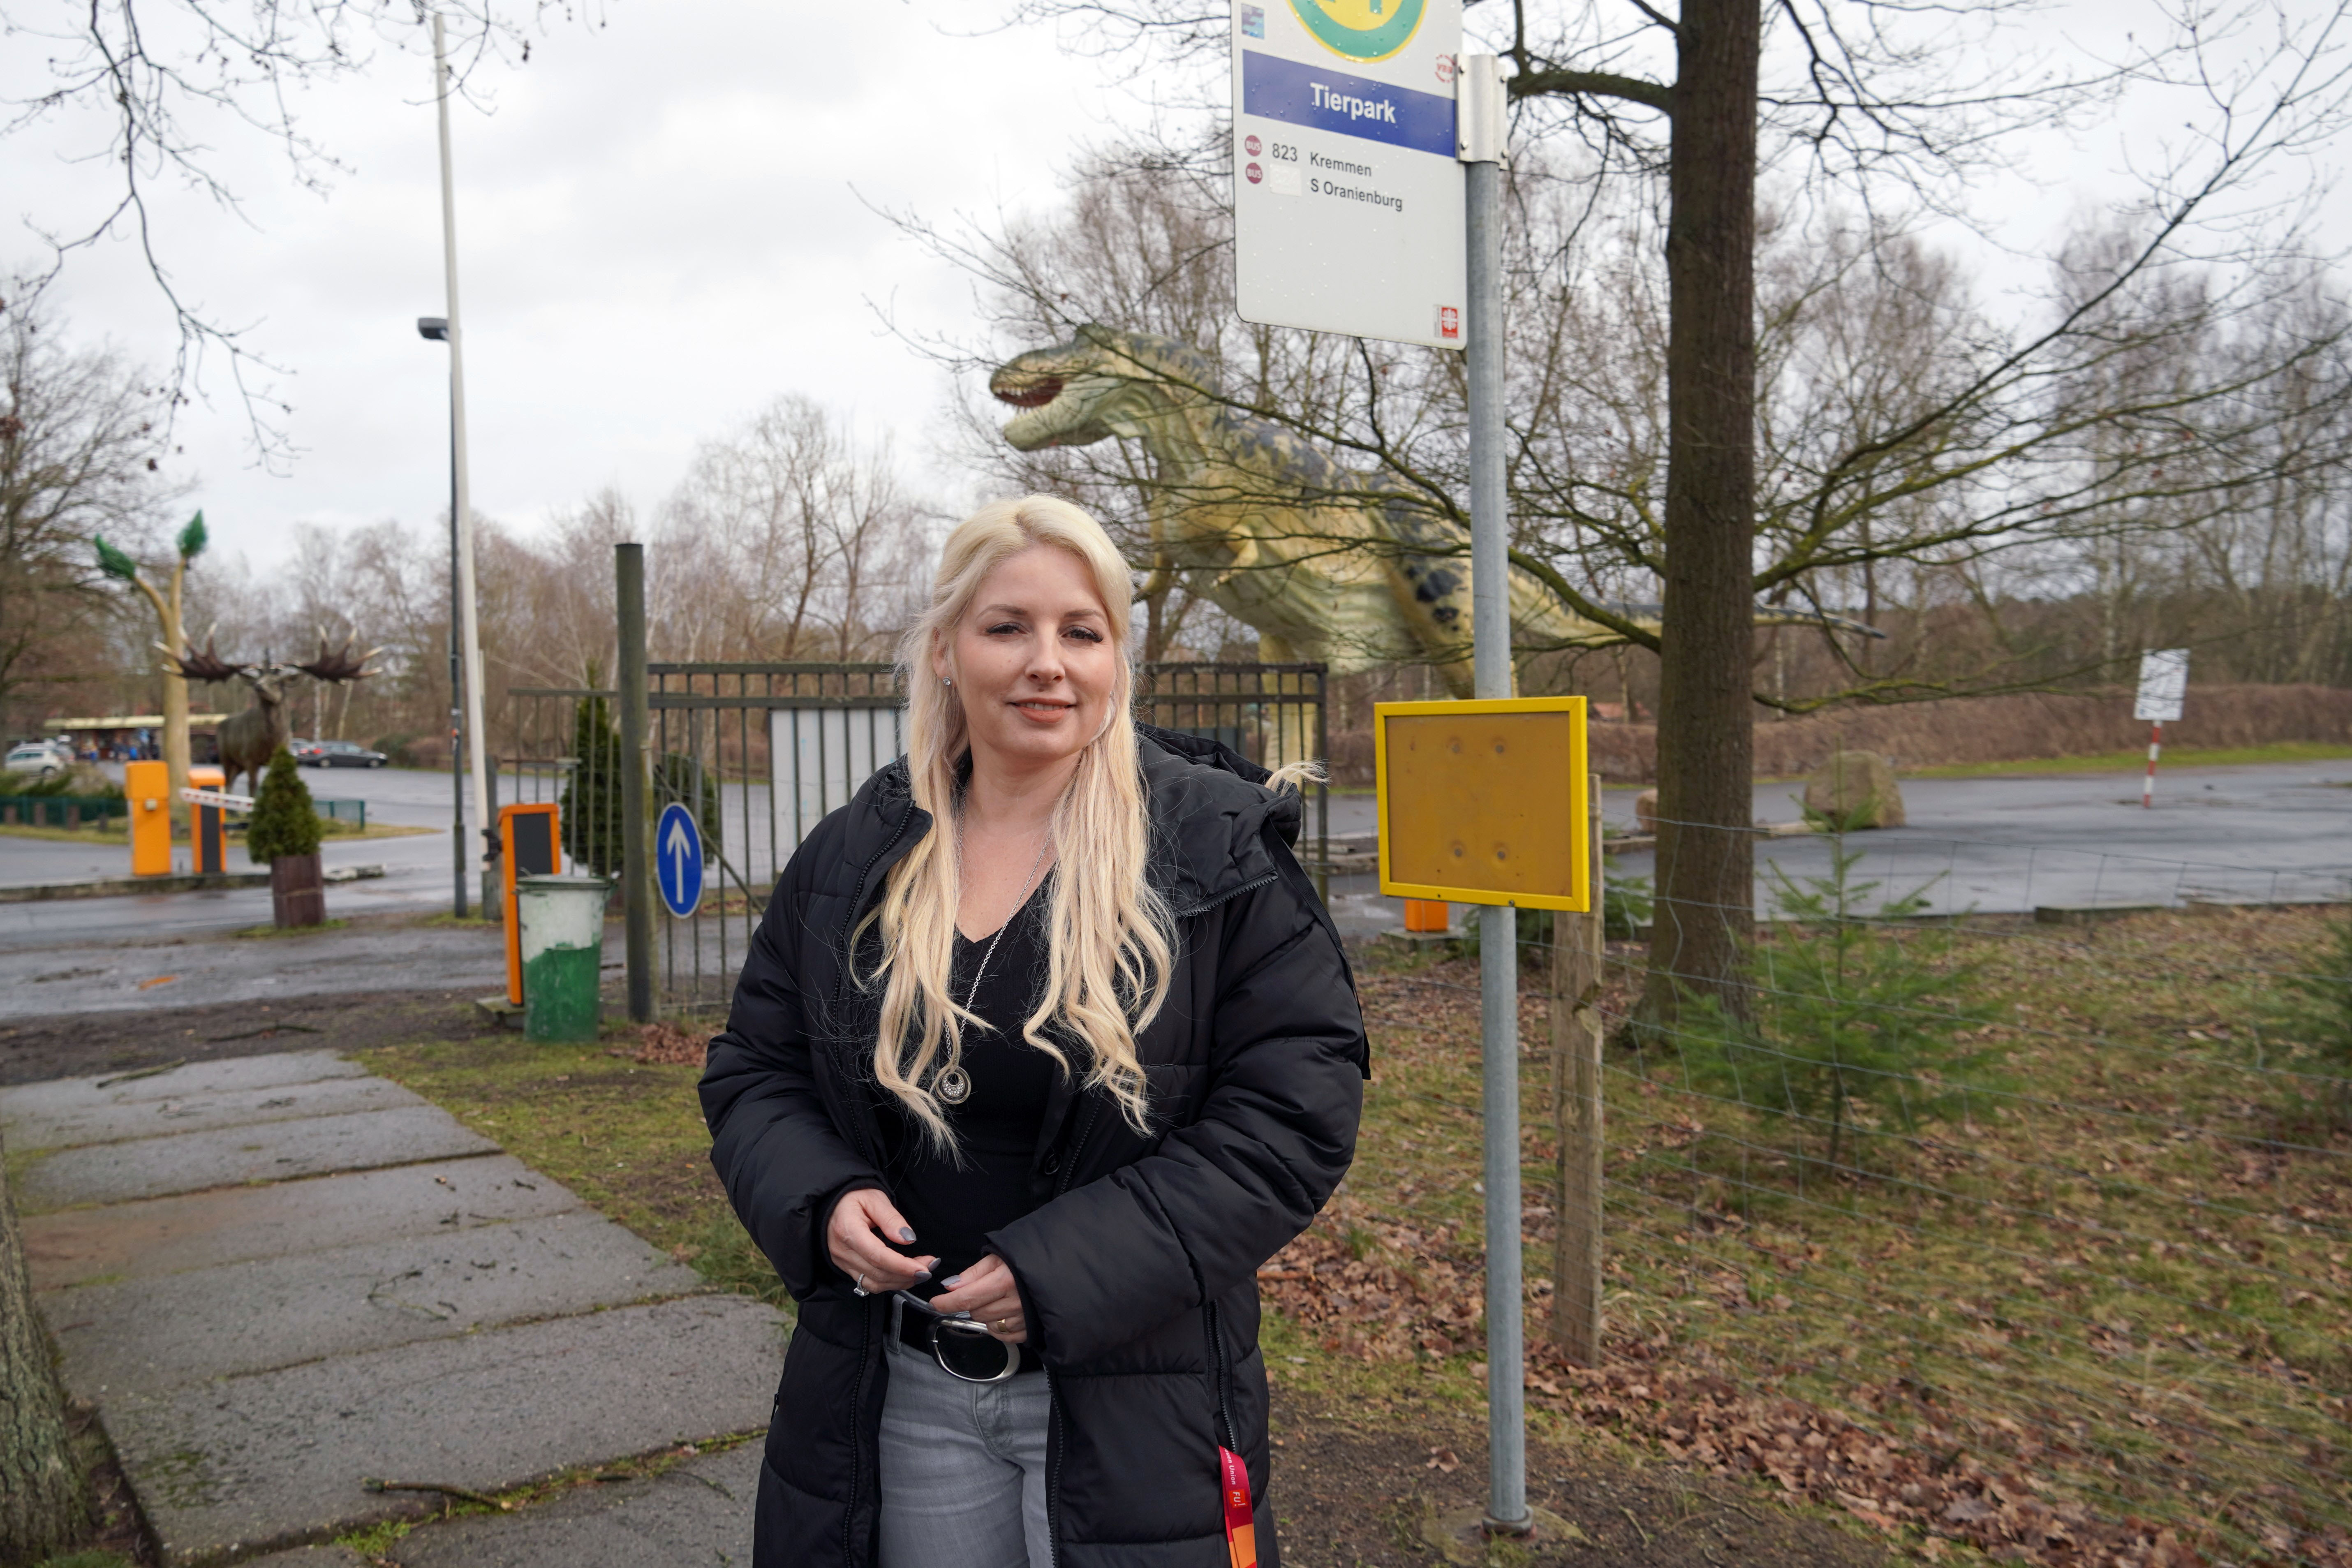 Nicole Walter-Mundt und die CDU Oranienburg wollen die Busanbindung für den Tierpark Germendorf langfristig sicherstellen, Foto: Christian Howe